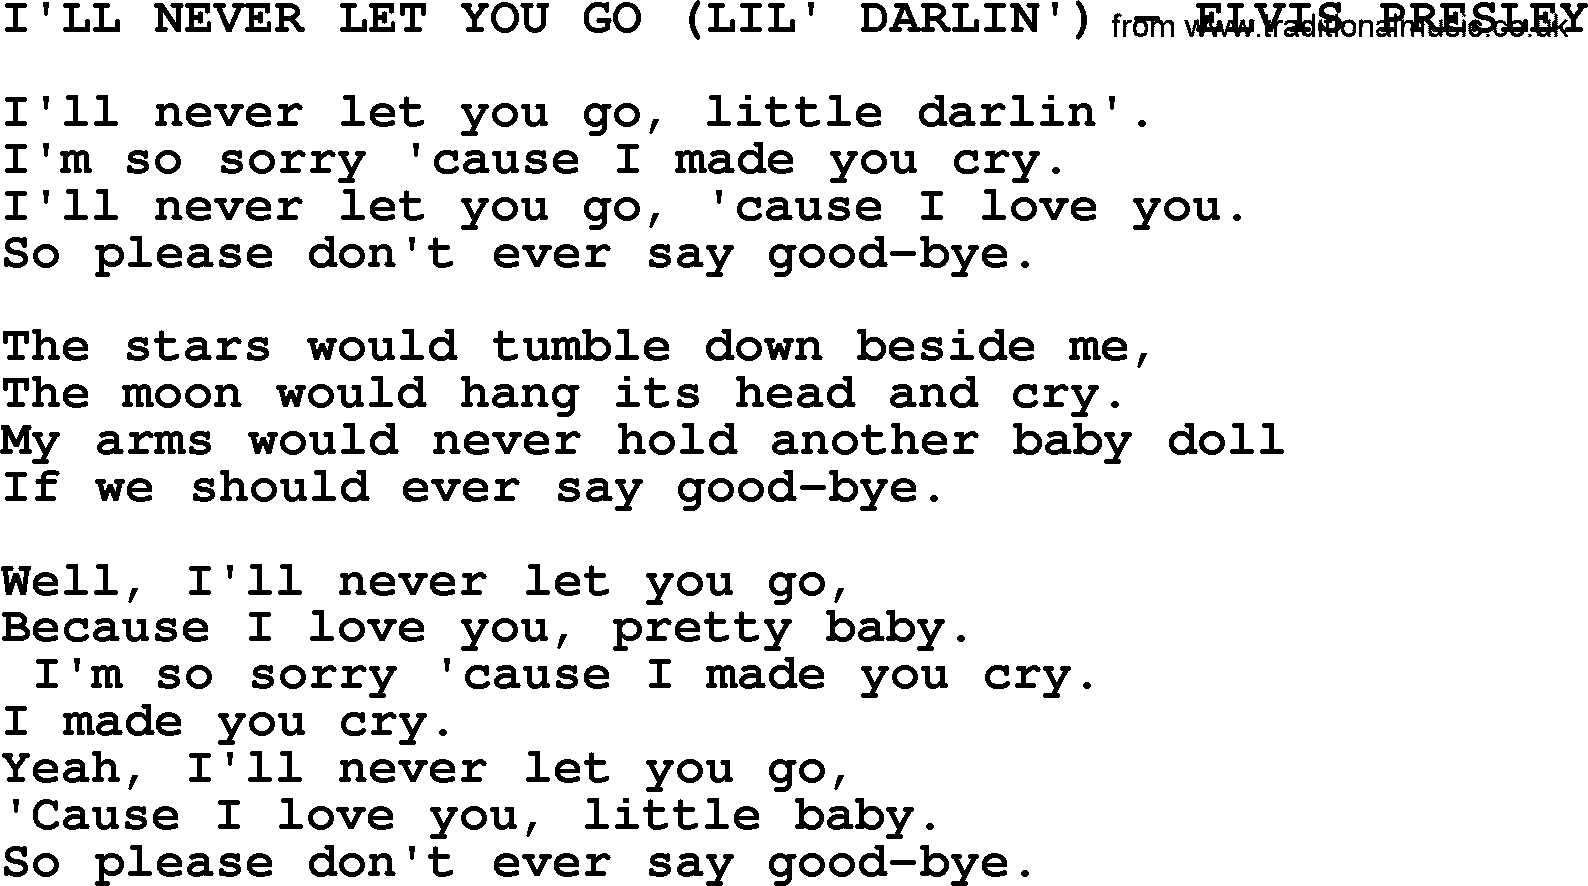 Elvis Presley song: I'll Never Let You Go (Lil' Darlin')-Elvis Presley-.txt lyrics and chords